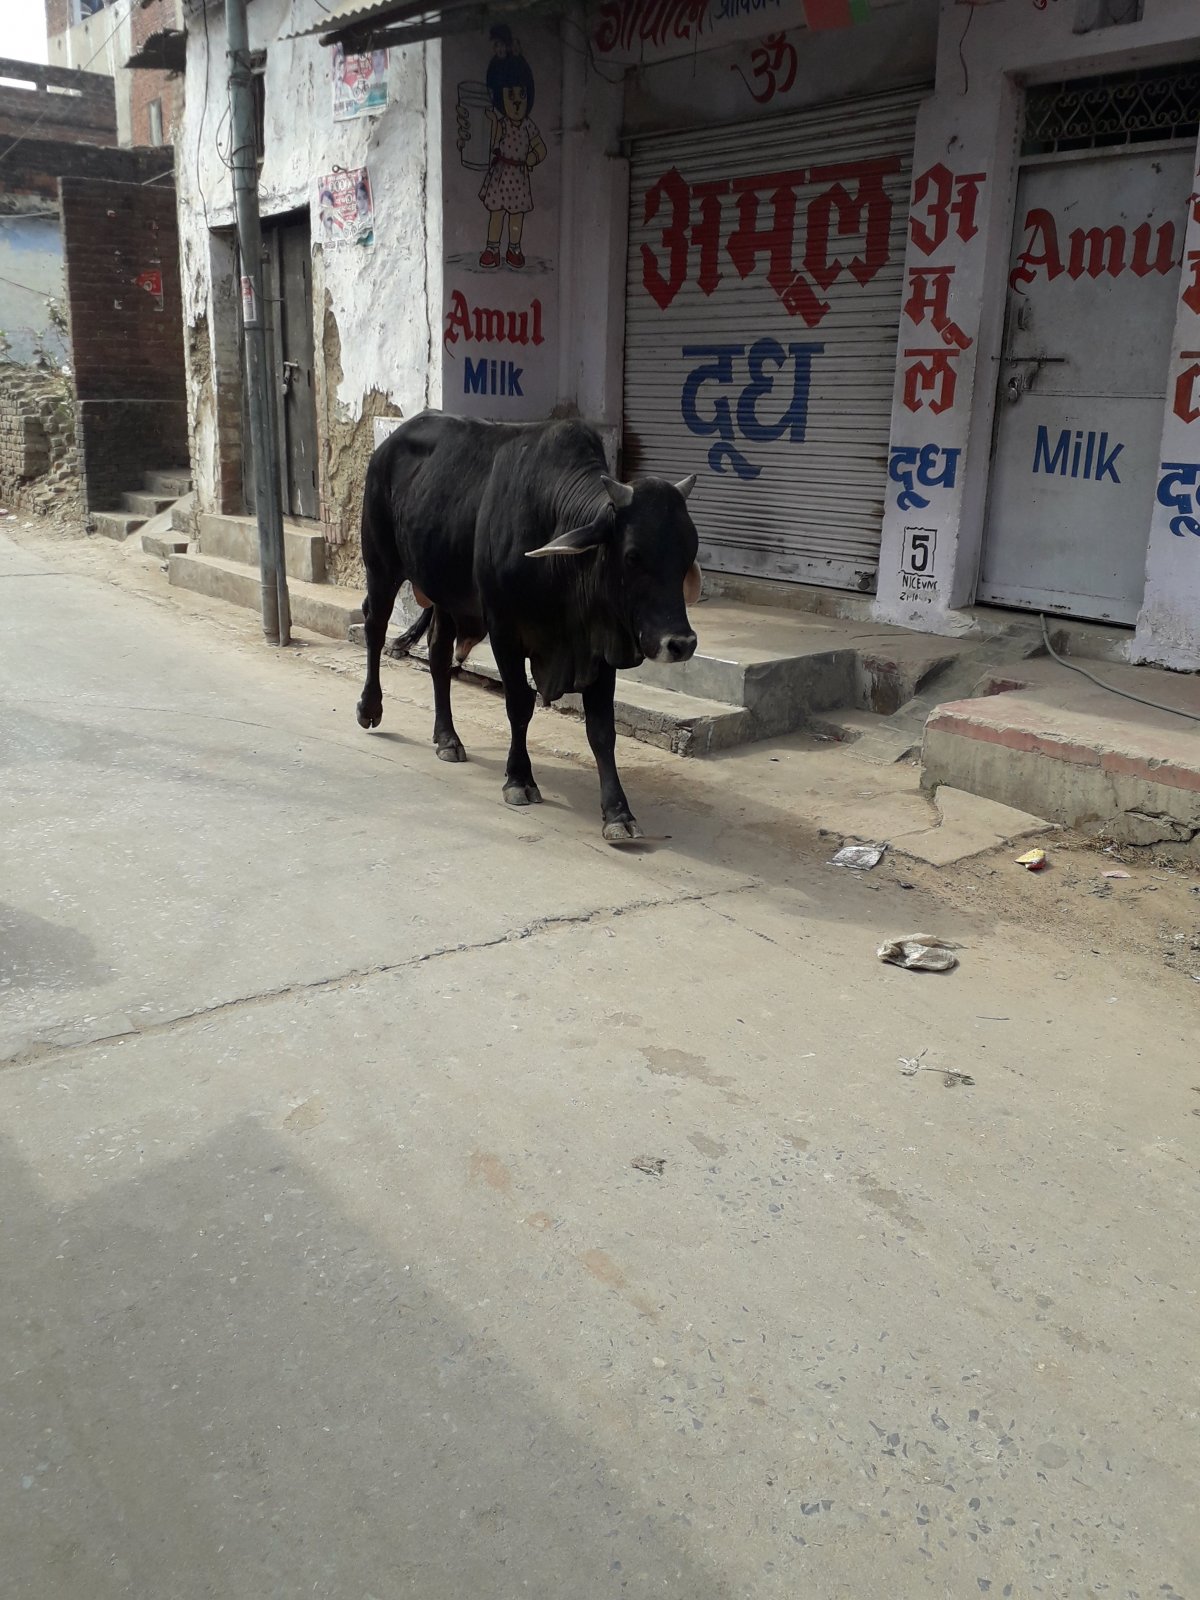 Békésen ballag a szent tehén a milk (tej) feliratú fal mellett •  Fotó: Kiss Judit